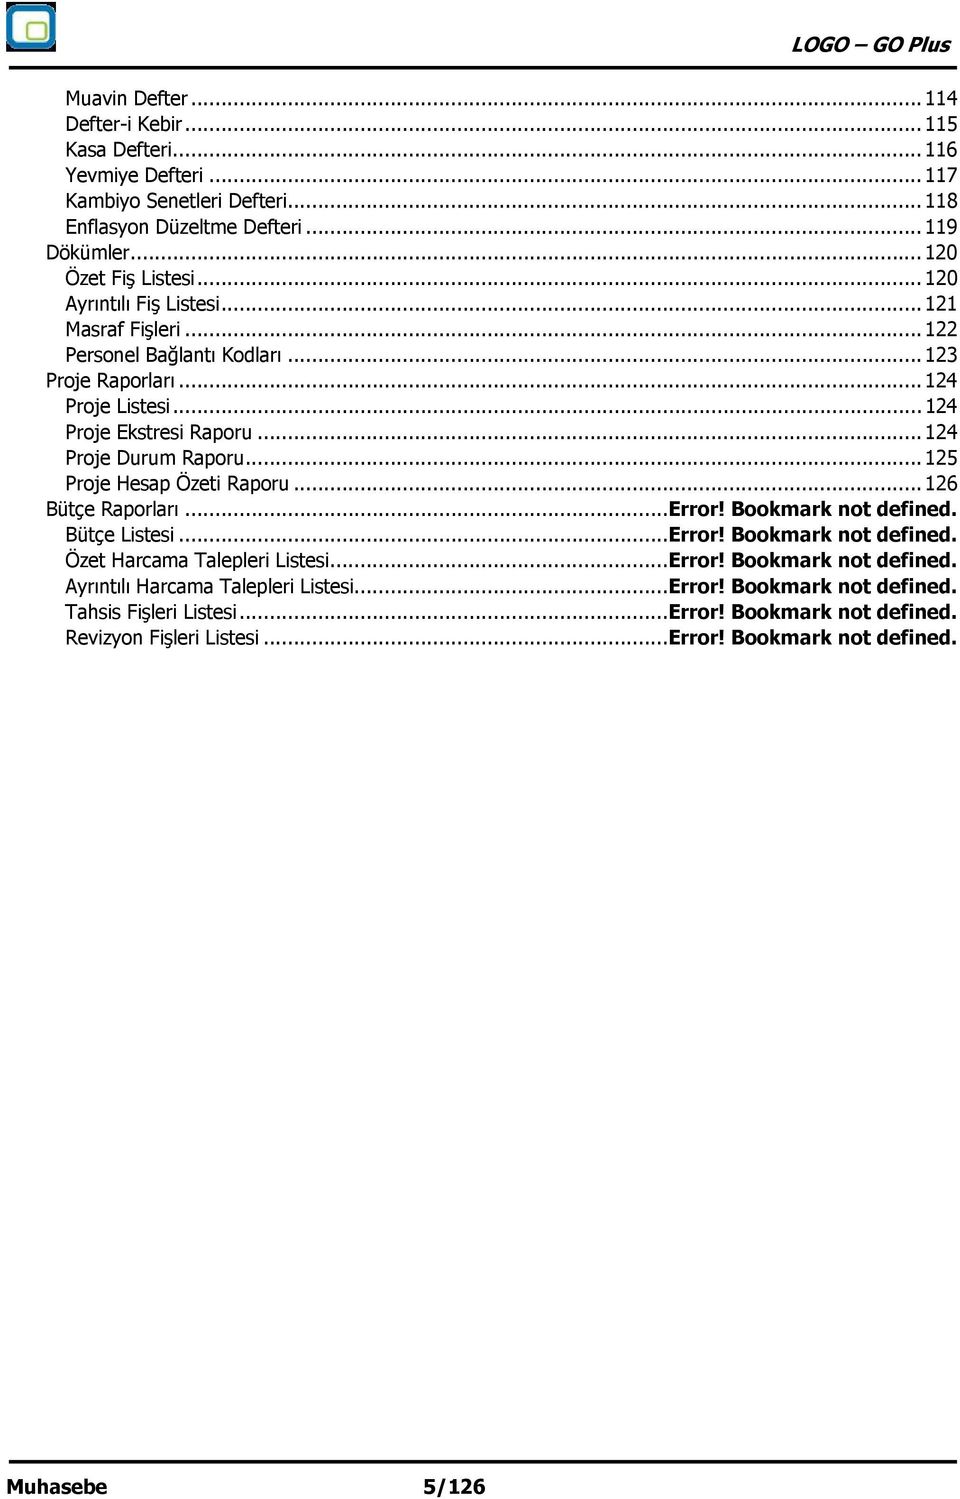 .. 125 Proje Hesap Özeti Raporu... 126 Bütçe Raporları... Error! Bookmark not defined. Bütçe Listesi... Error! Bookmark not defined. Özet Harcama Talepleri Listesi... Error! Bookmark not defined. Ayrıntılı Harcama Talepleri Listesi.